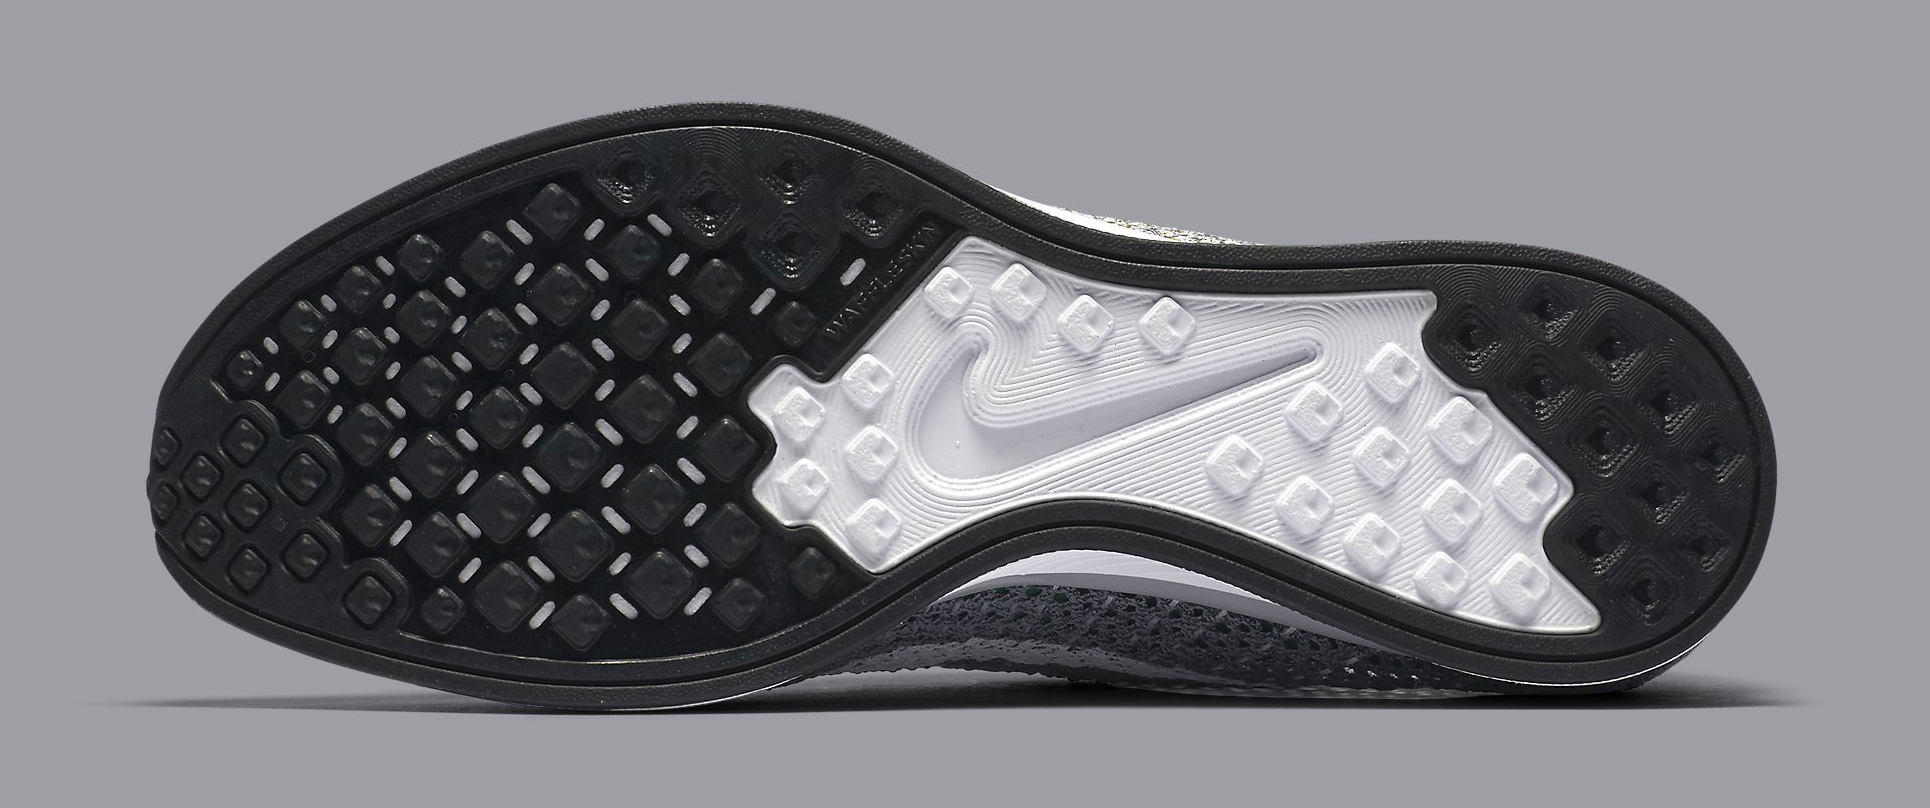 Nike Flyknit Racer Grey 862713-002 Sole